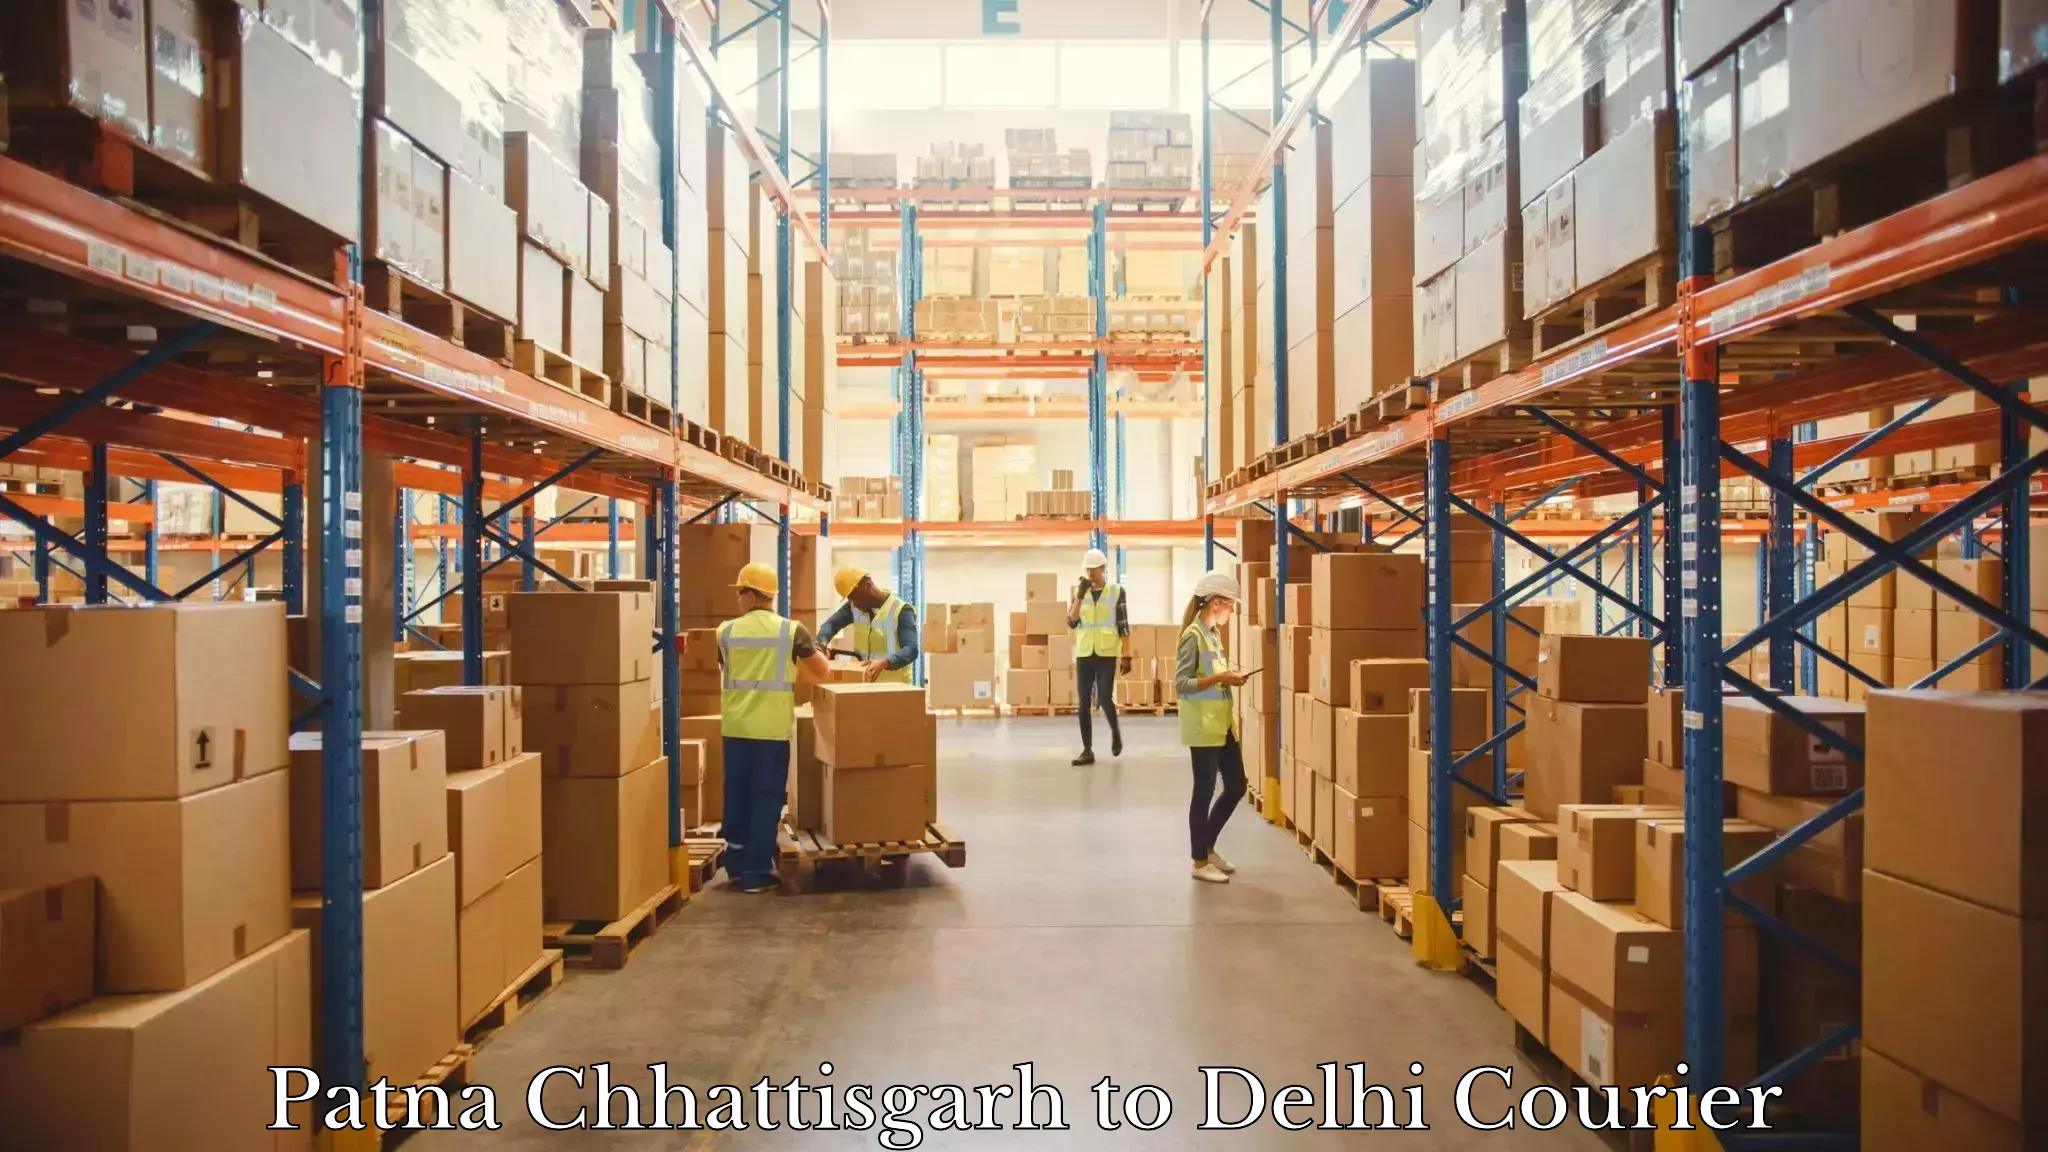 Reliable courier service Patna Chhattisgarh to Ashok Vihar